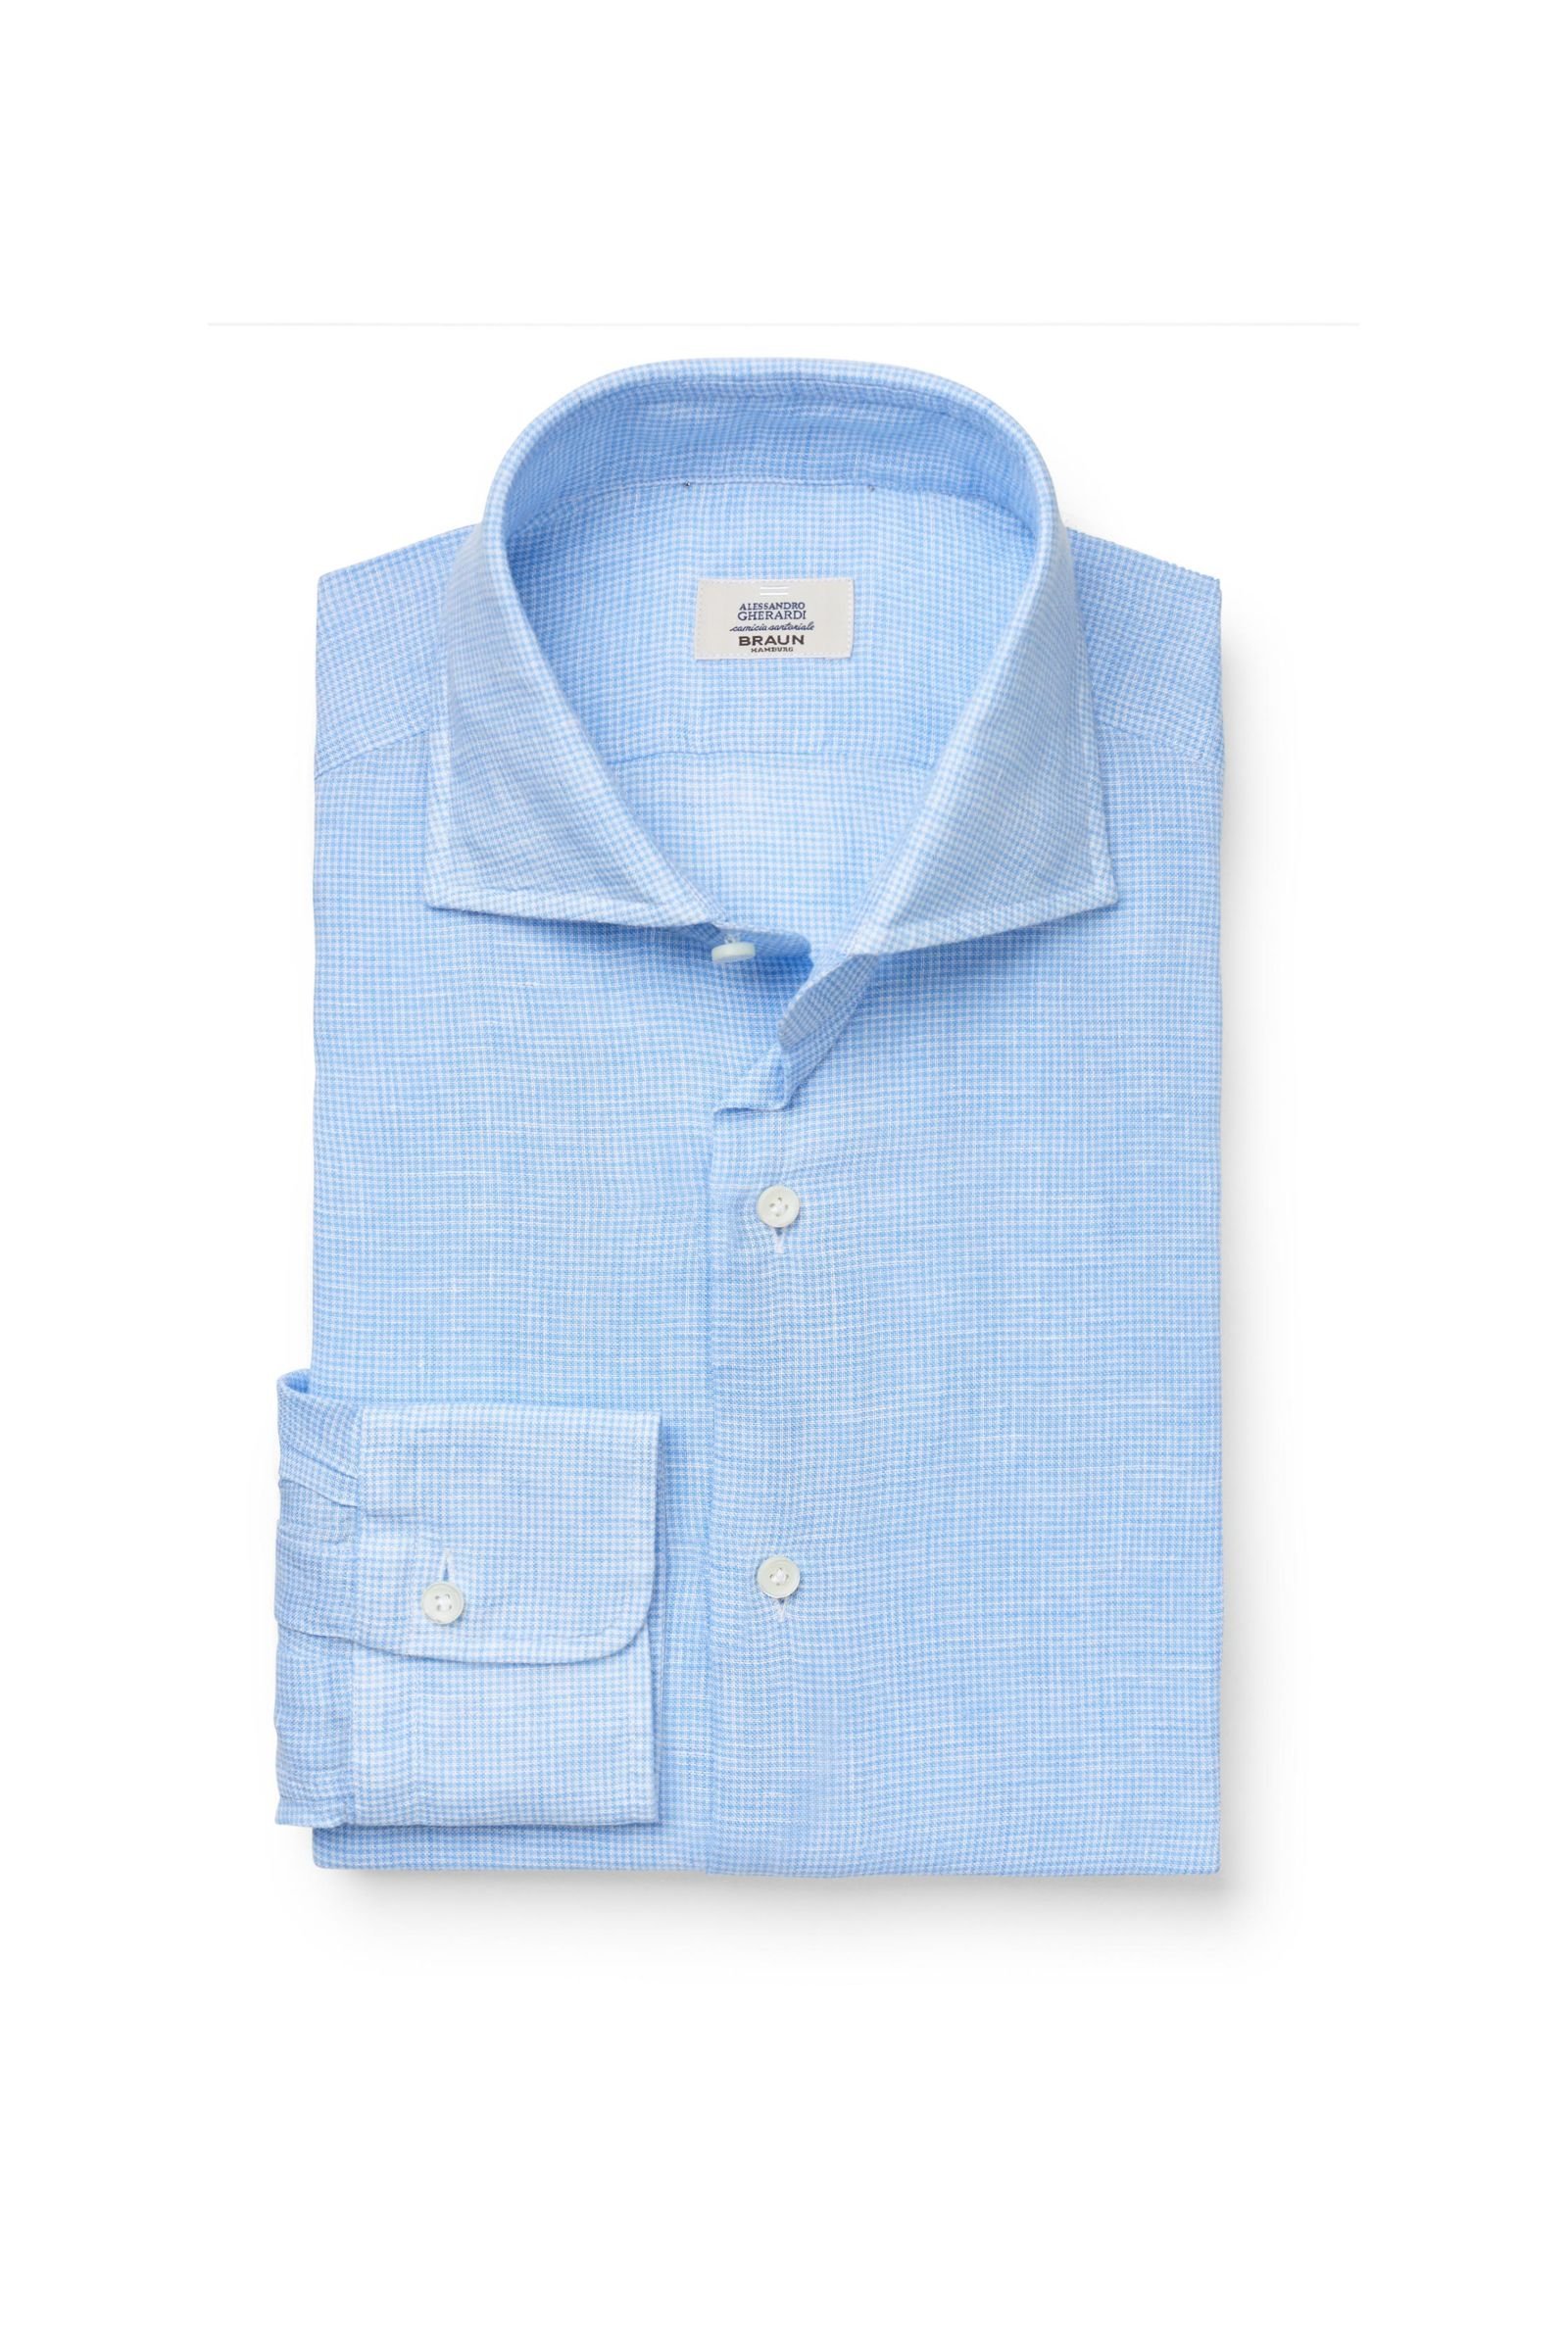 Linen shirt shark collar light blue/white checked